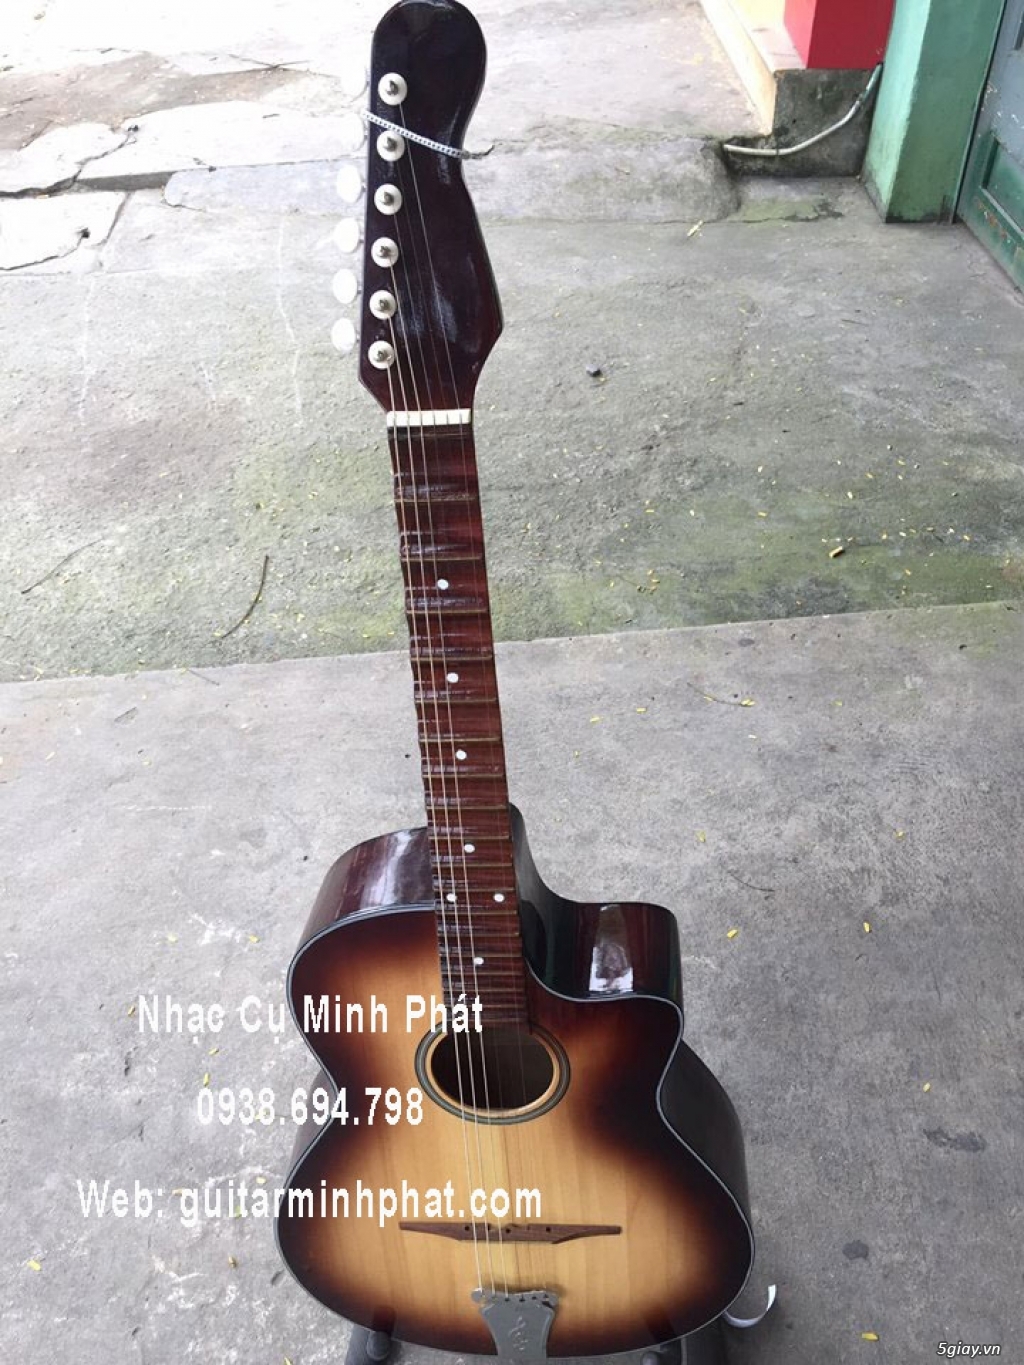 Bán đàn guitar cổ thùng phím lõm giá rẻ - 13